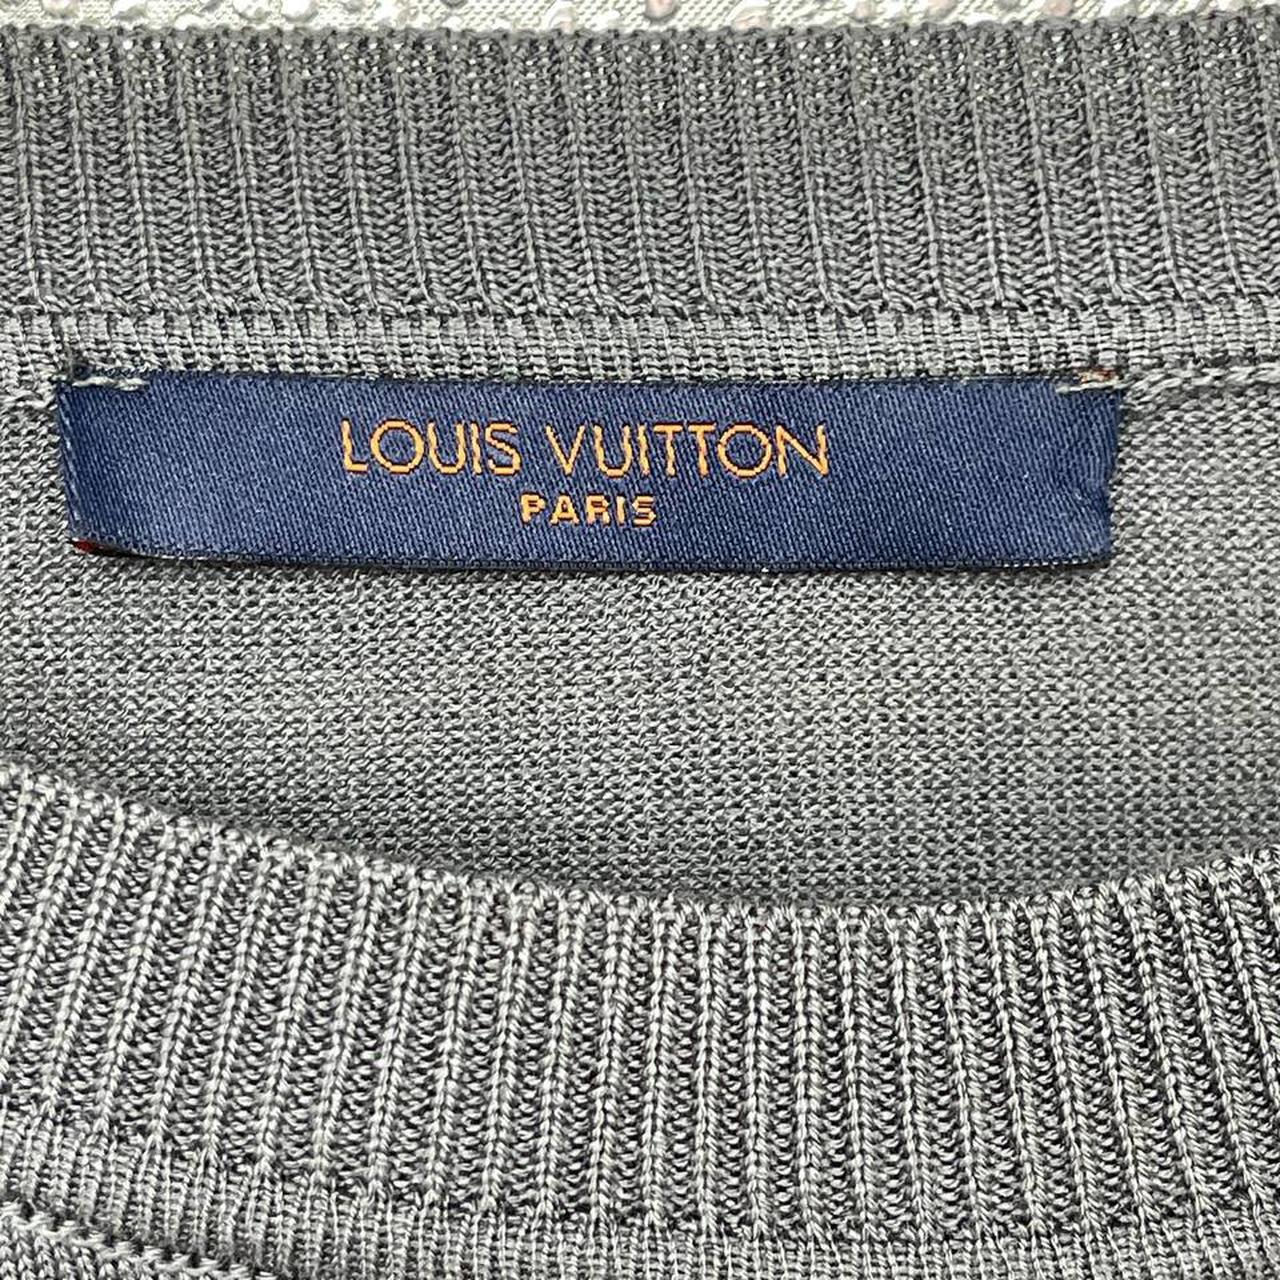 Louis Vuitton Red Monogram Logo T-shirt Fits like an - Depop